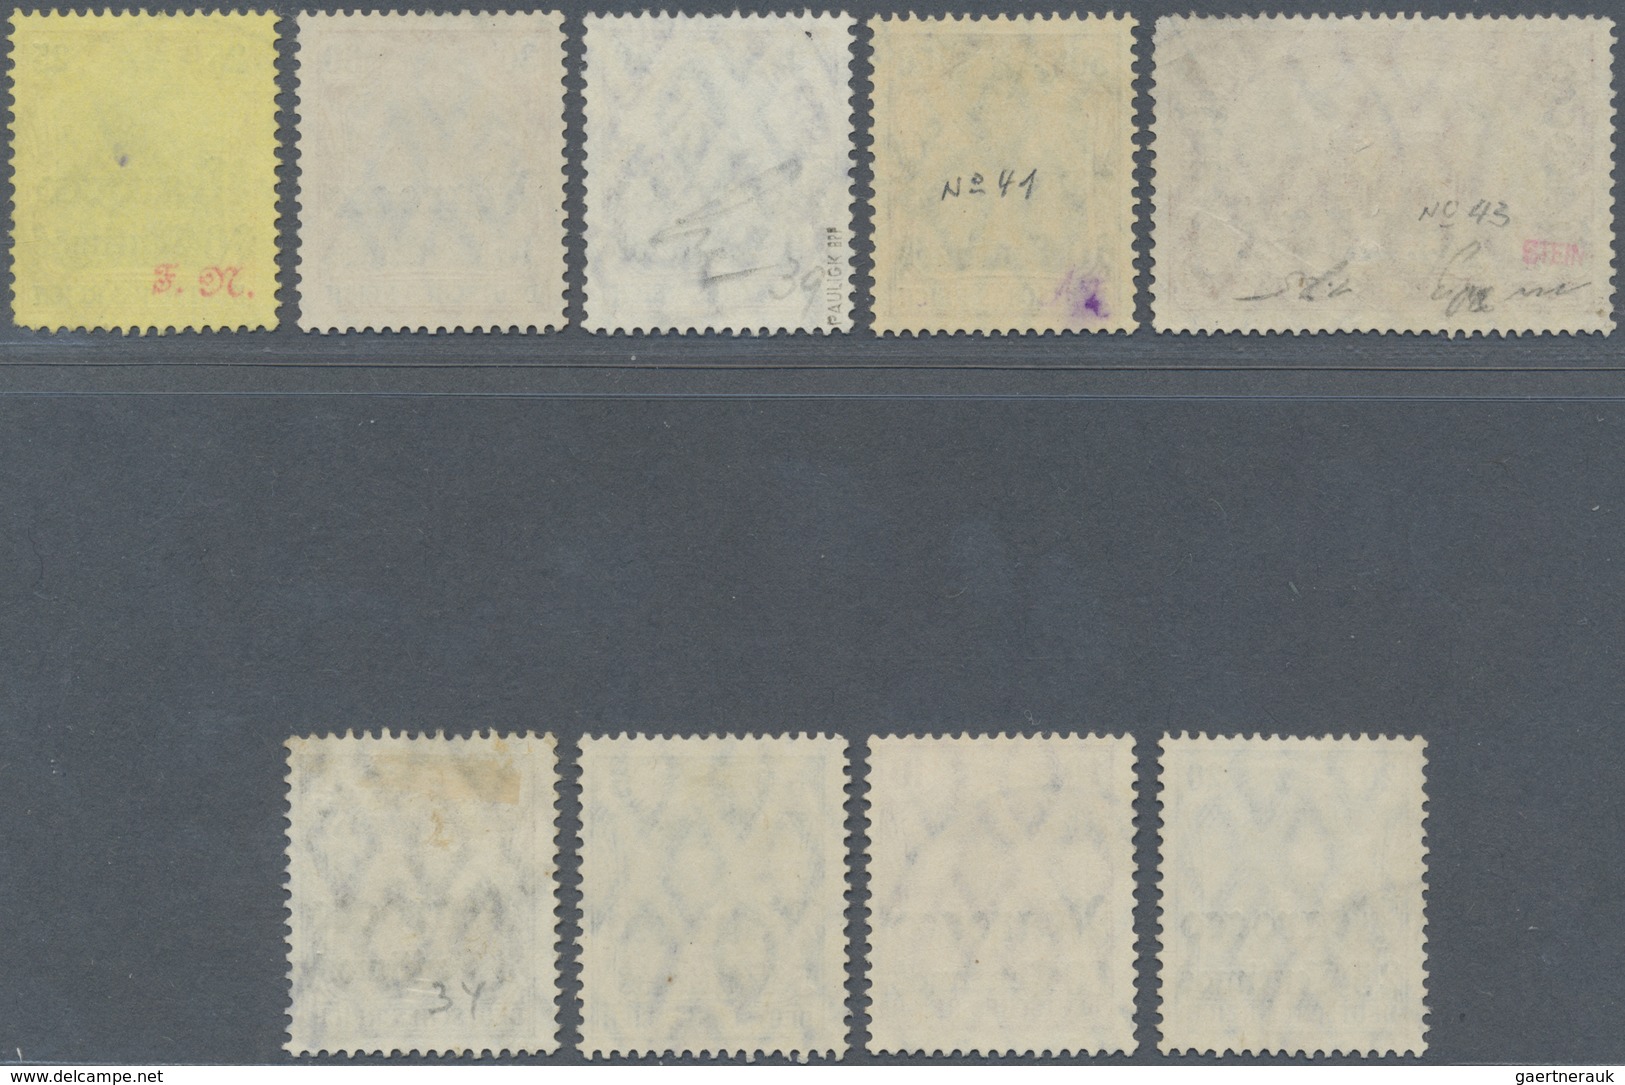 O Deutsche Post In Marokko: 1906. Lot Von 9 Gestempelten Werten, Dabei 1P 25C (runde Ecke) Und 50c. (M - Deutsche Post In Marokko